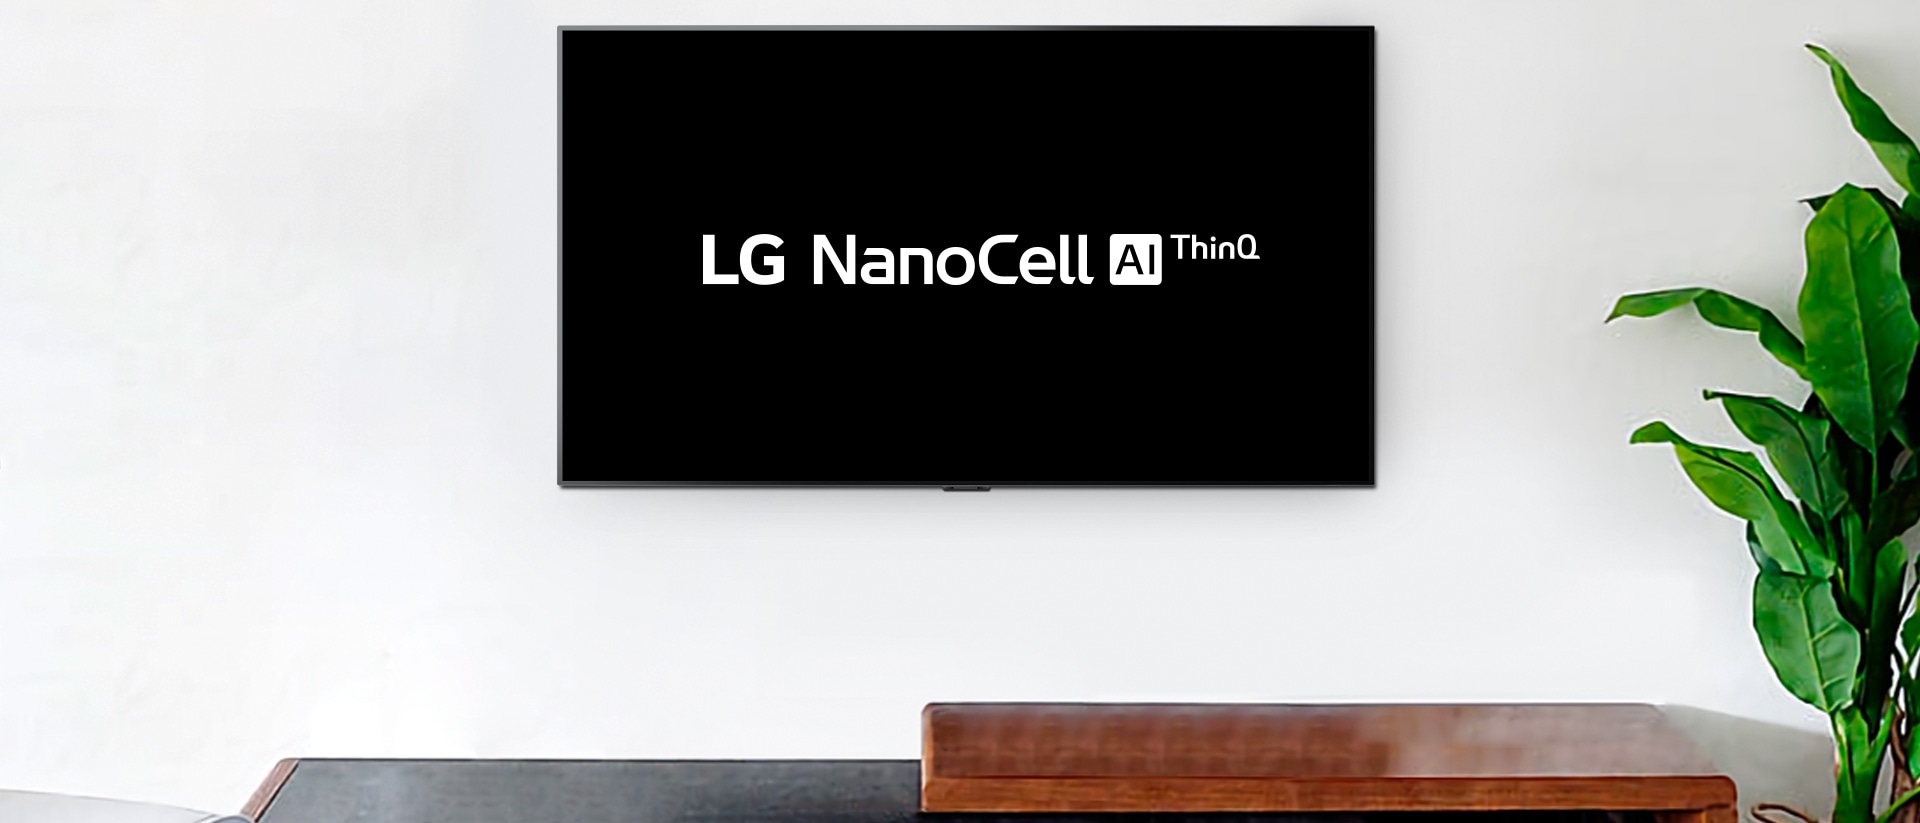 Televize namontovaná na stěně s logem LG OLED AI ThinQ na černém pozadí